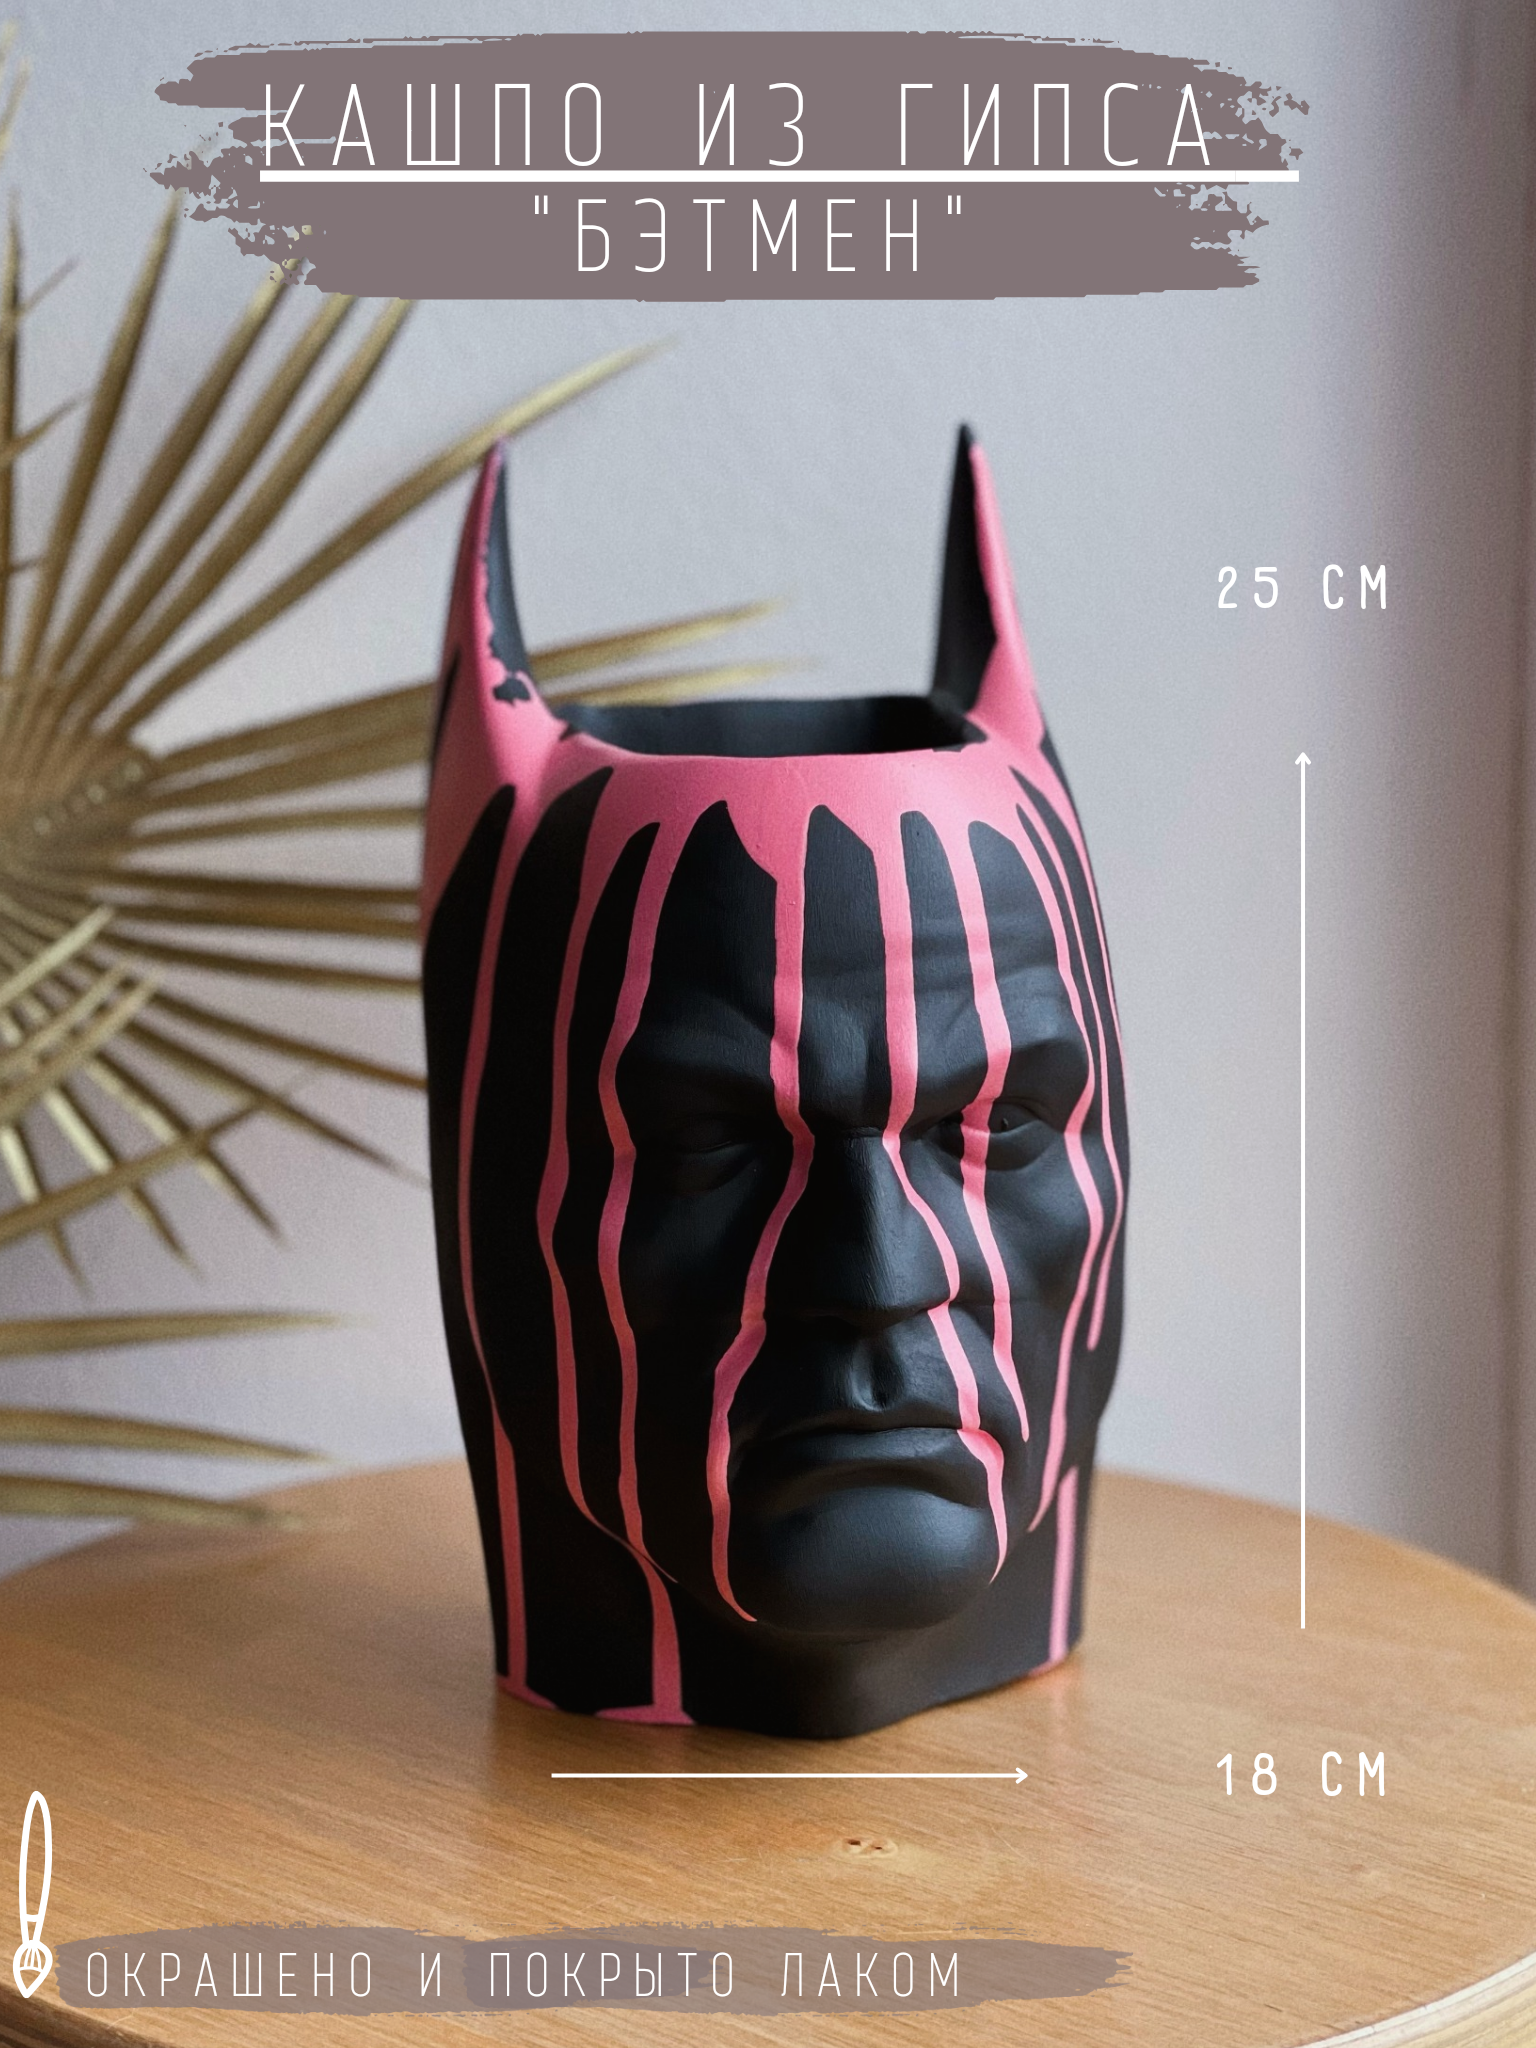 Кашпо/горшок из гипса - Бэтмен в черном цвете с розовым дизайном, 25 см.